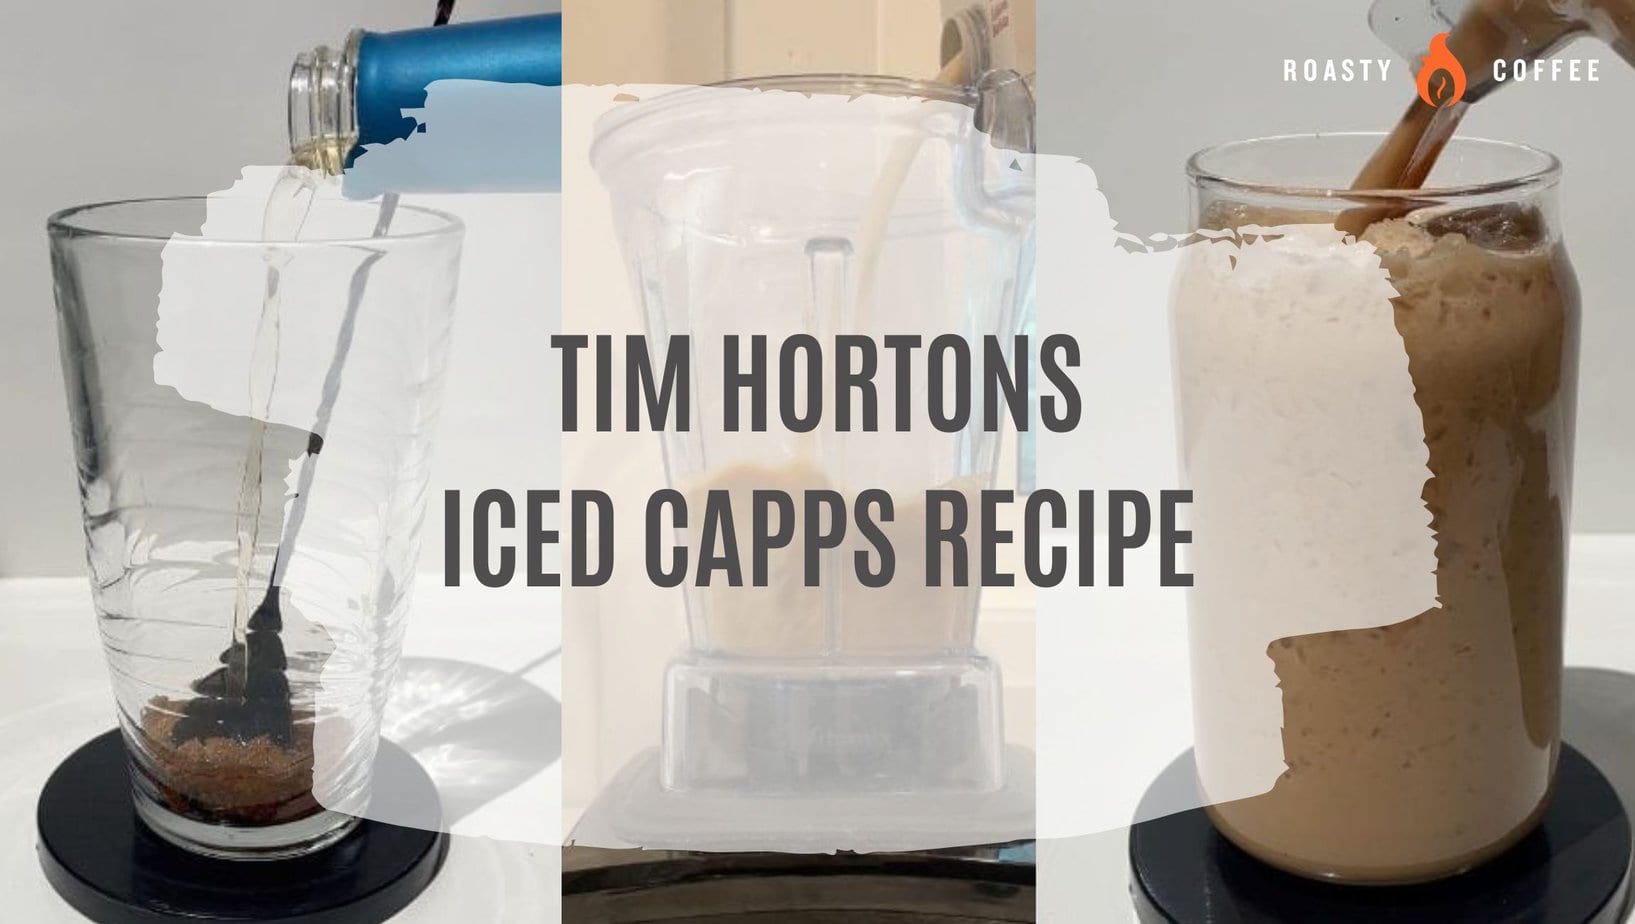 La receta de imitación más fácil de Tim Hortons Iced Capps